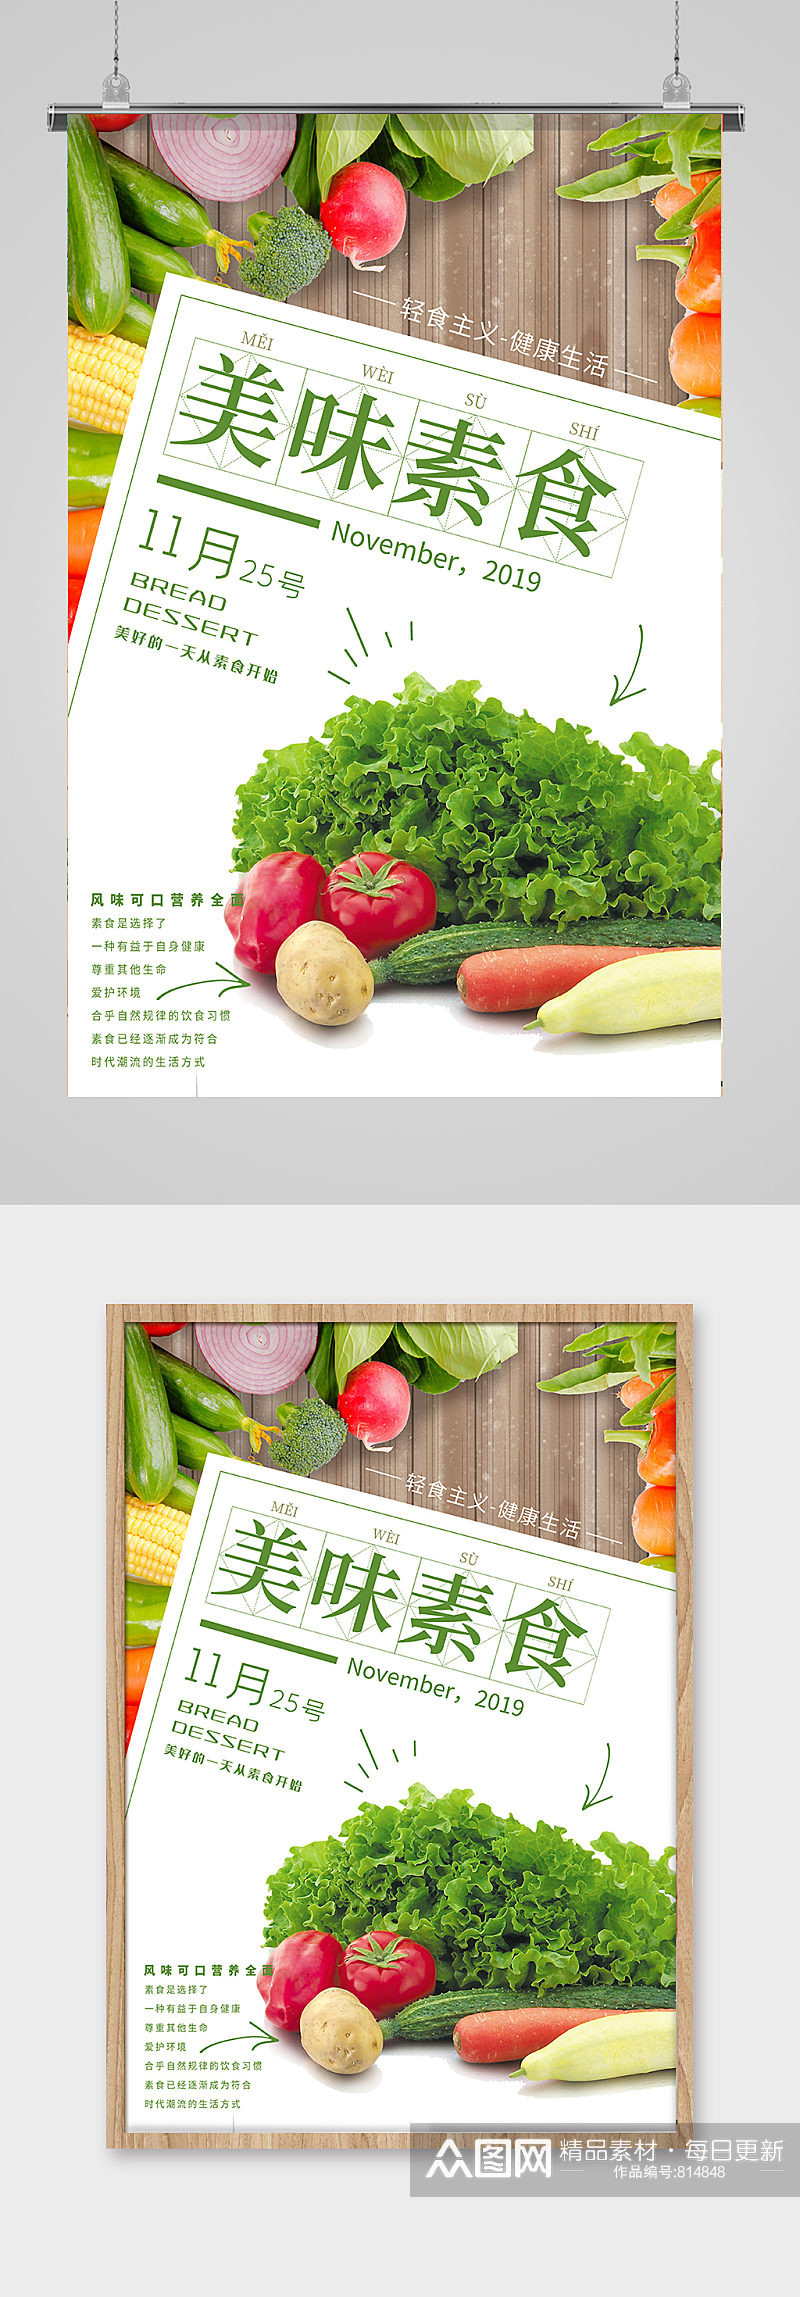 素食日绿色健康海报素材